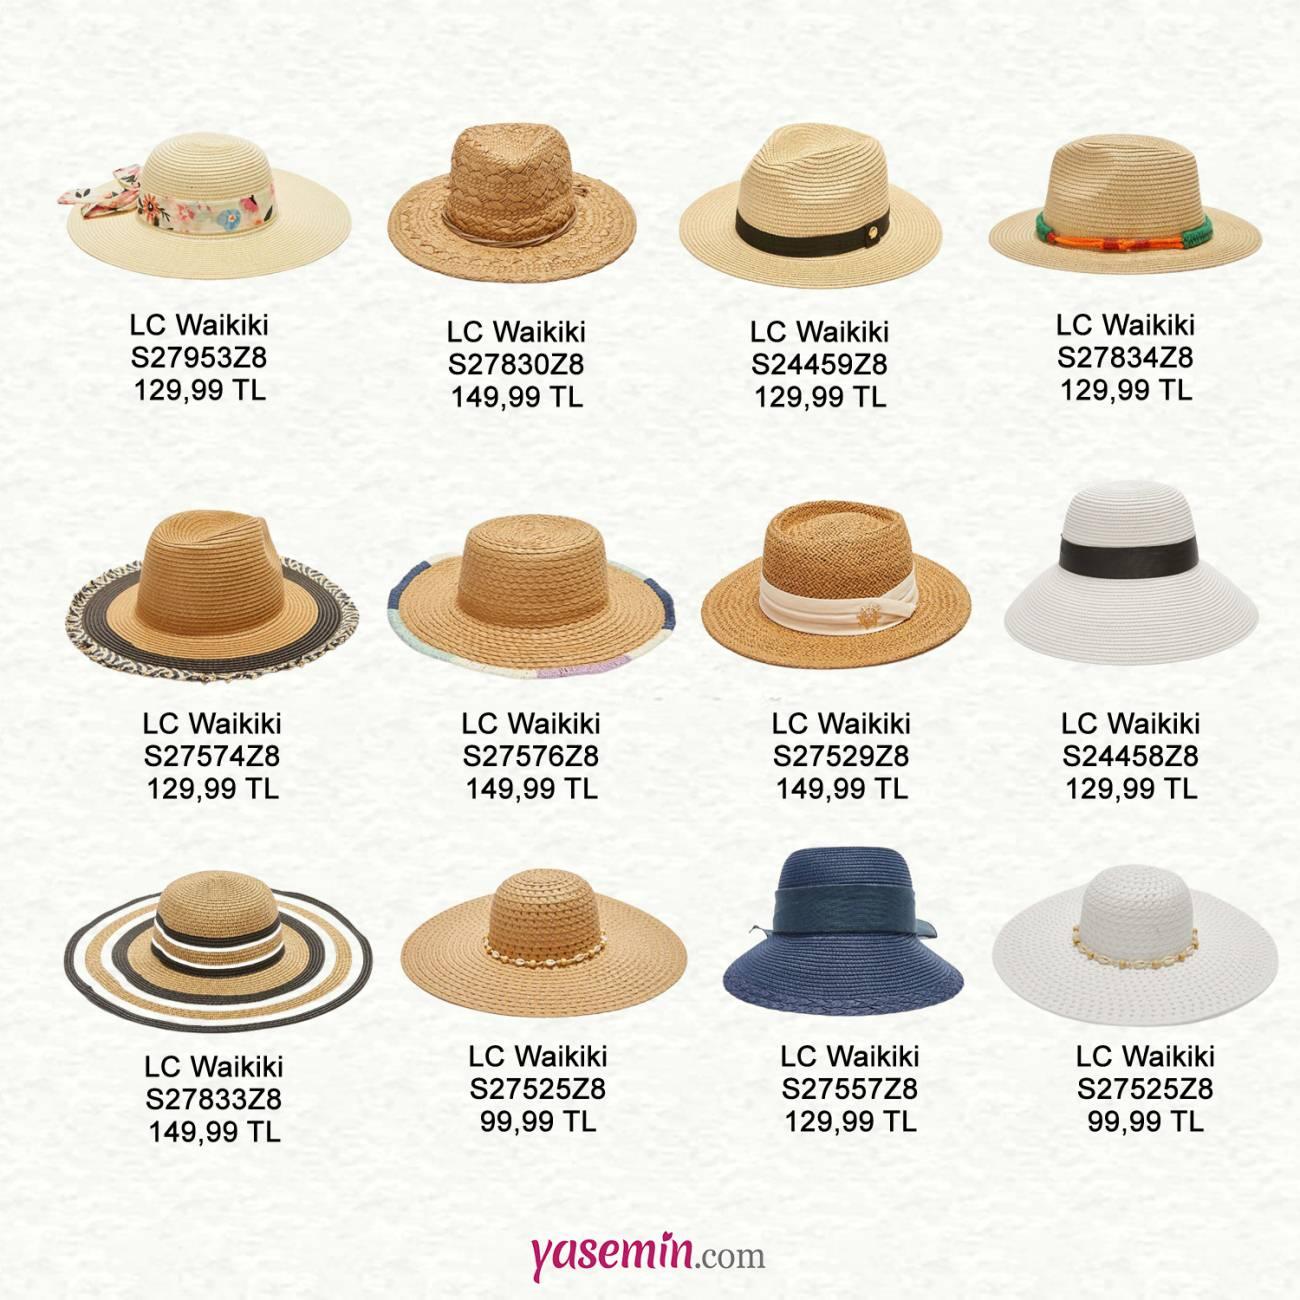 lcw hasır şapka model ve fiyatları